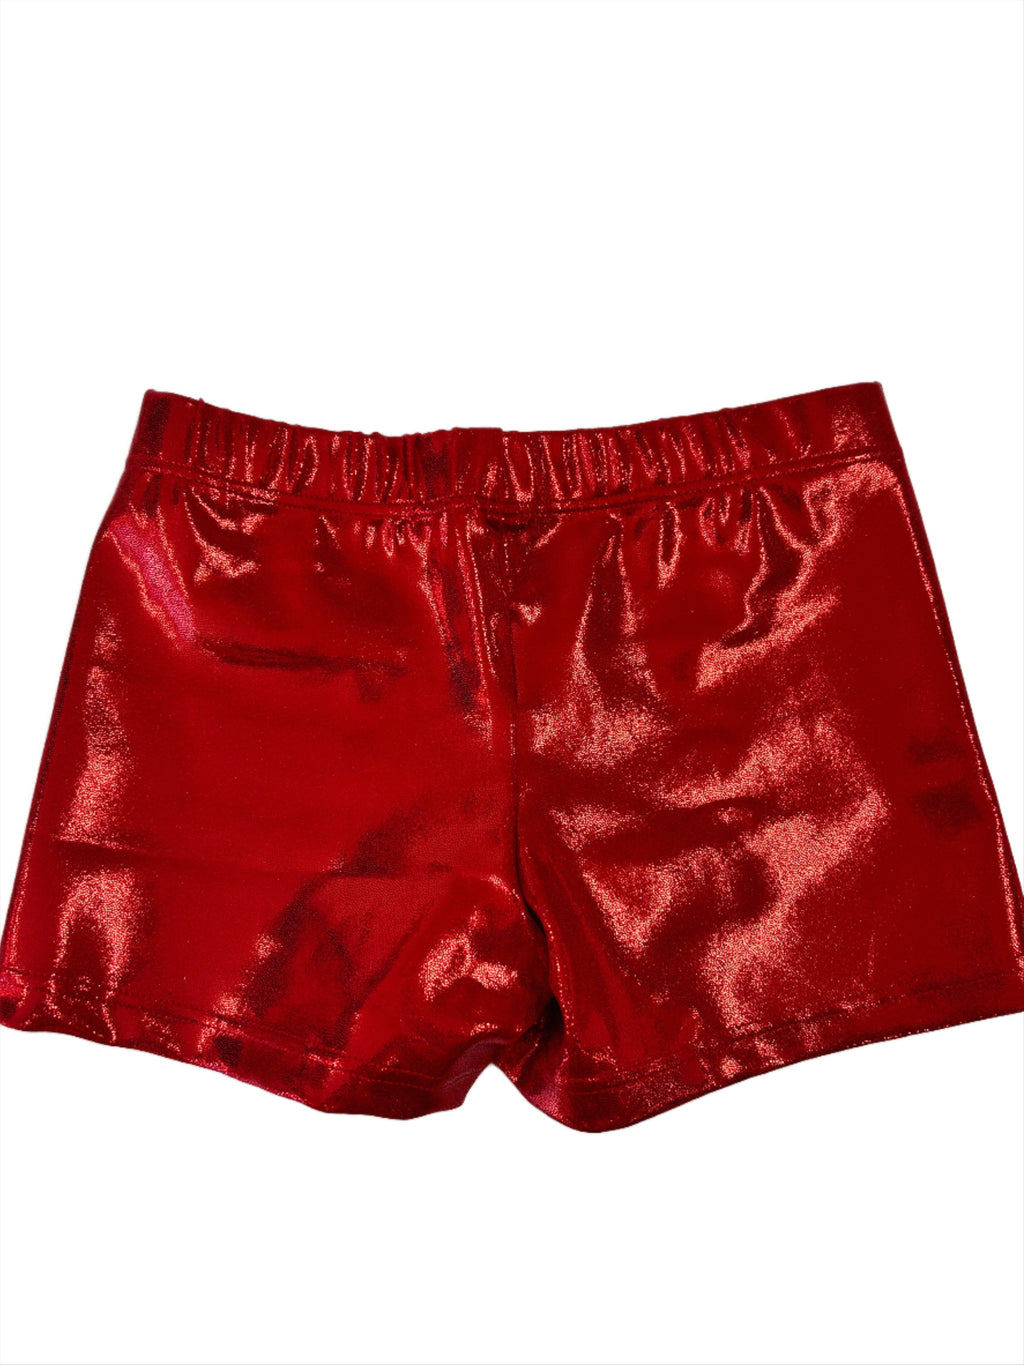 Red Mystique Girls Gymnastics Shorts